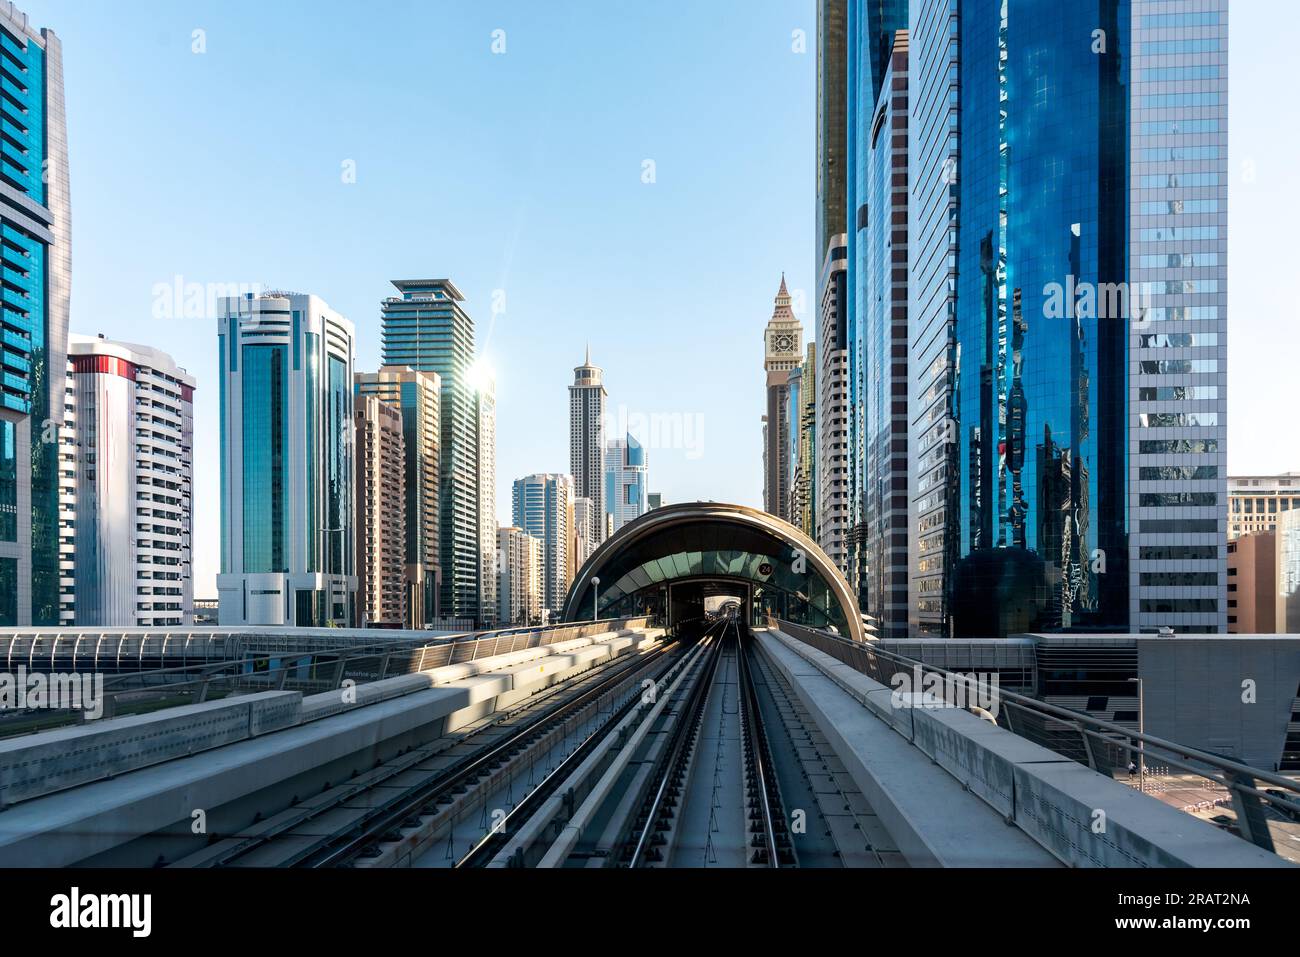 Dubai's downtown architecture with metro monorail train Stock Photo